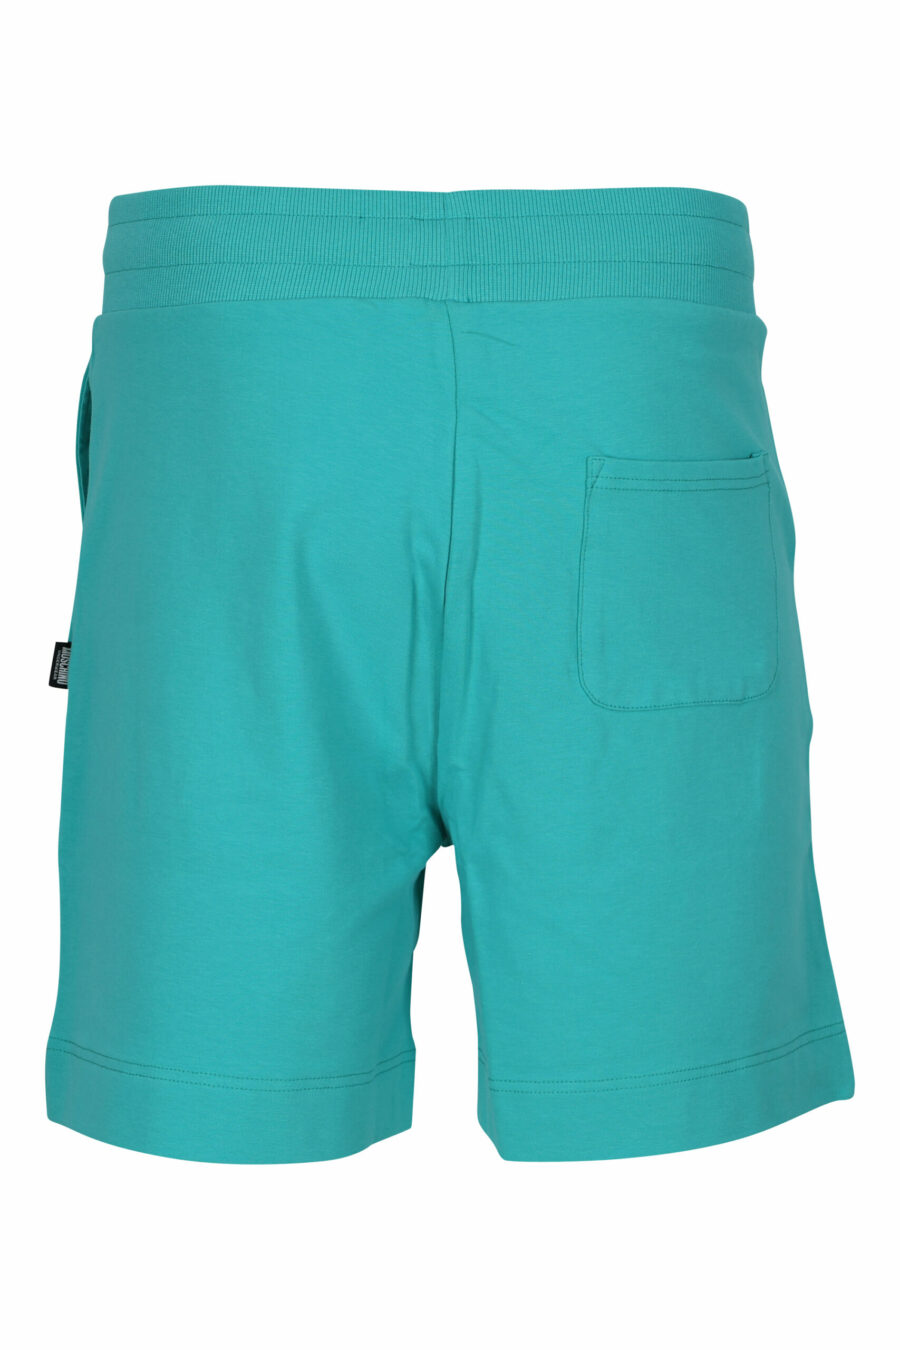 Pantalón de chándal corto verde con minilogo oso "underbear" en goma negro - 667113622323 1 scaled